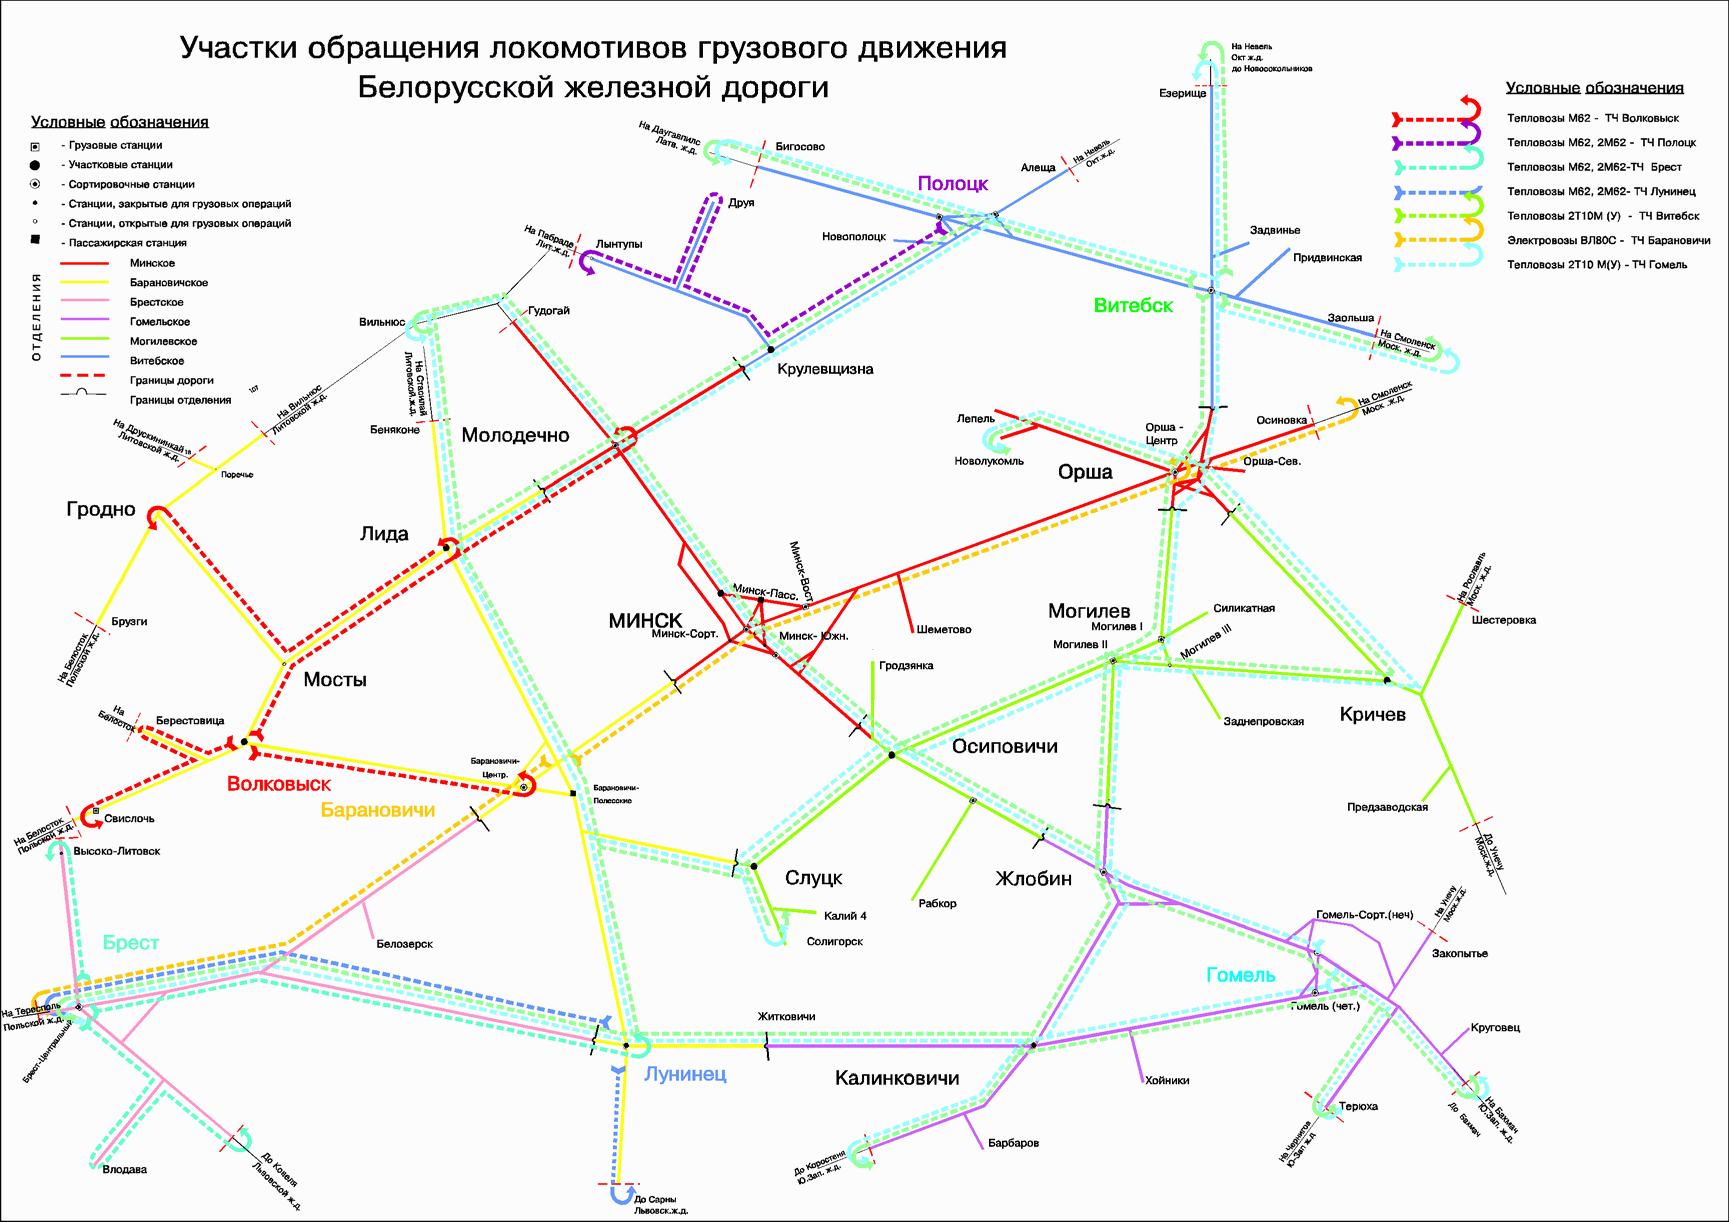 Национальное общество бельгийских железных дорог - abcdef.wiki